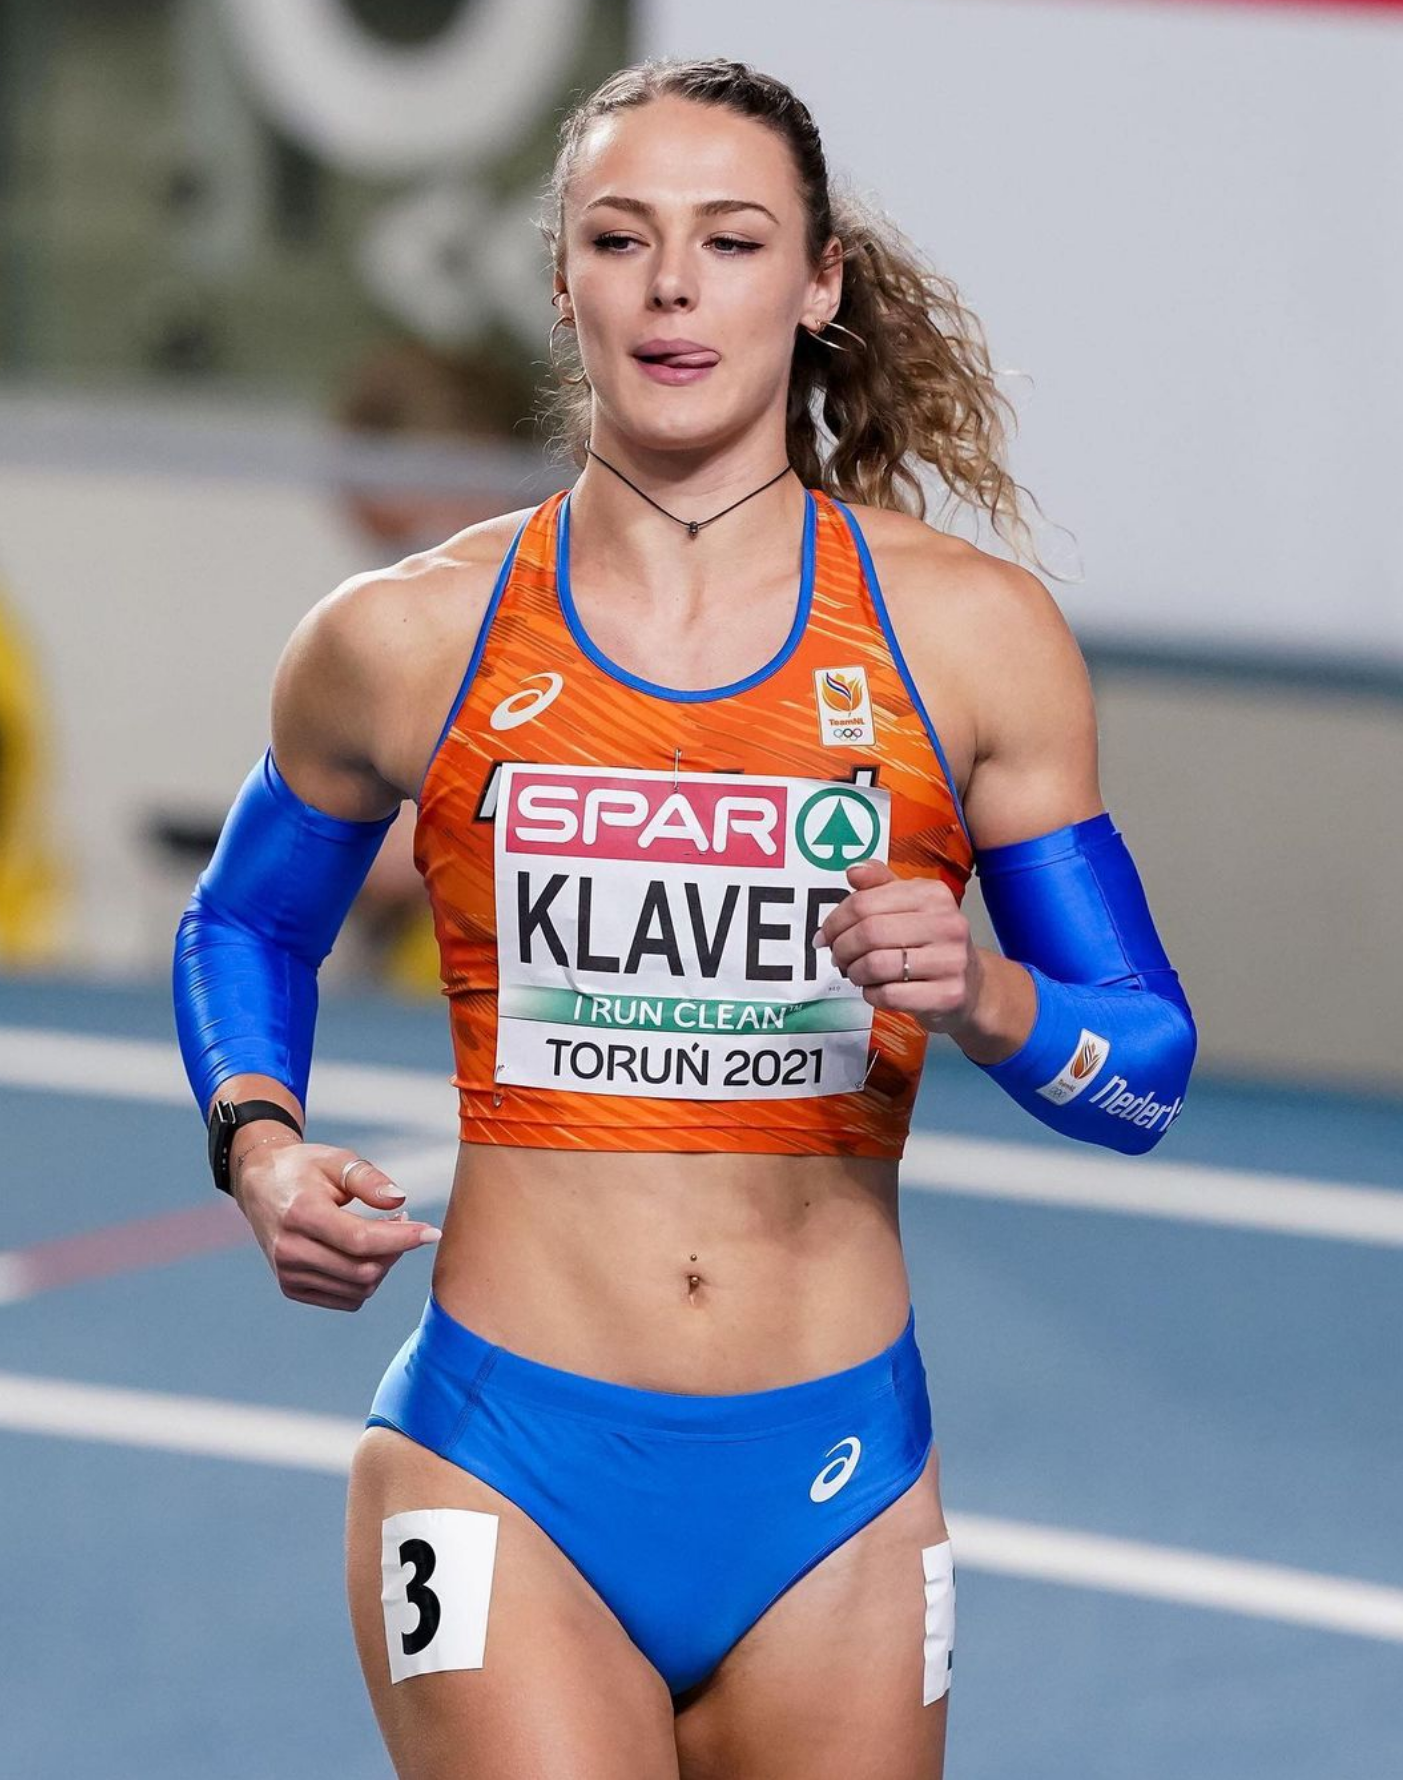 Dutch sprinter Lieke Klaver